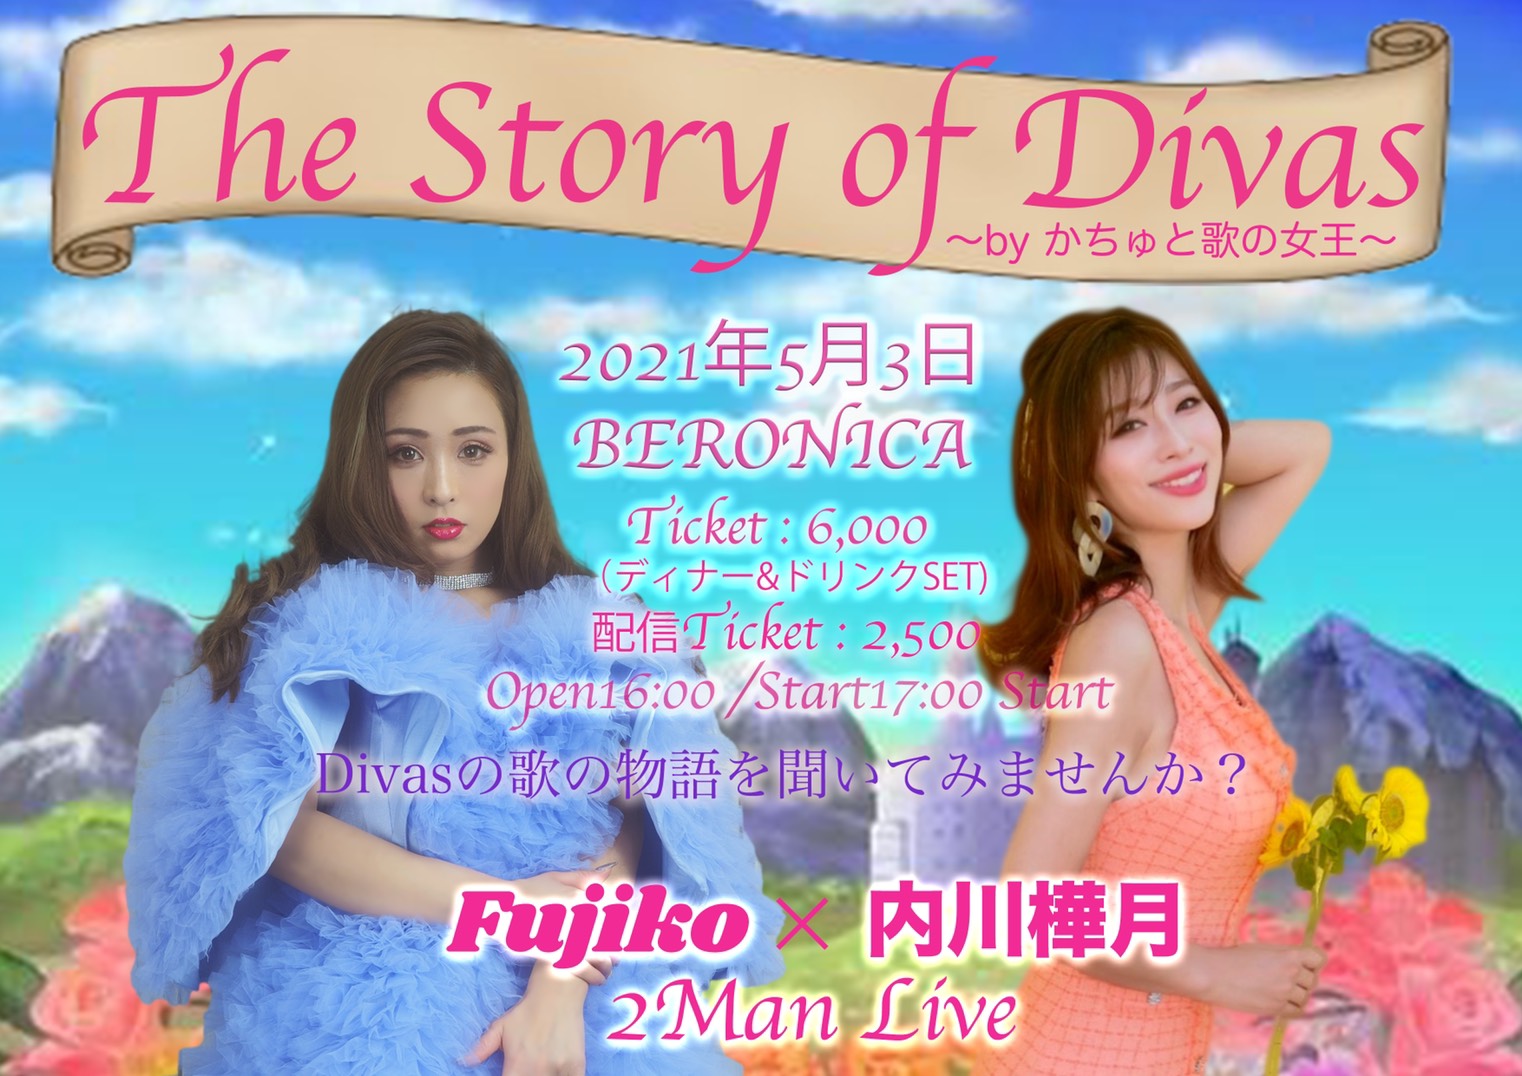 5/3 開催 Fujiko×内川樺月 【The Story of Divas 〜by かちゅと歌の女王〜】